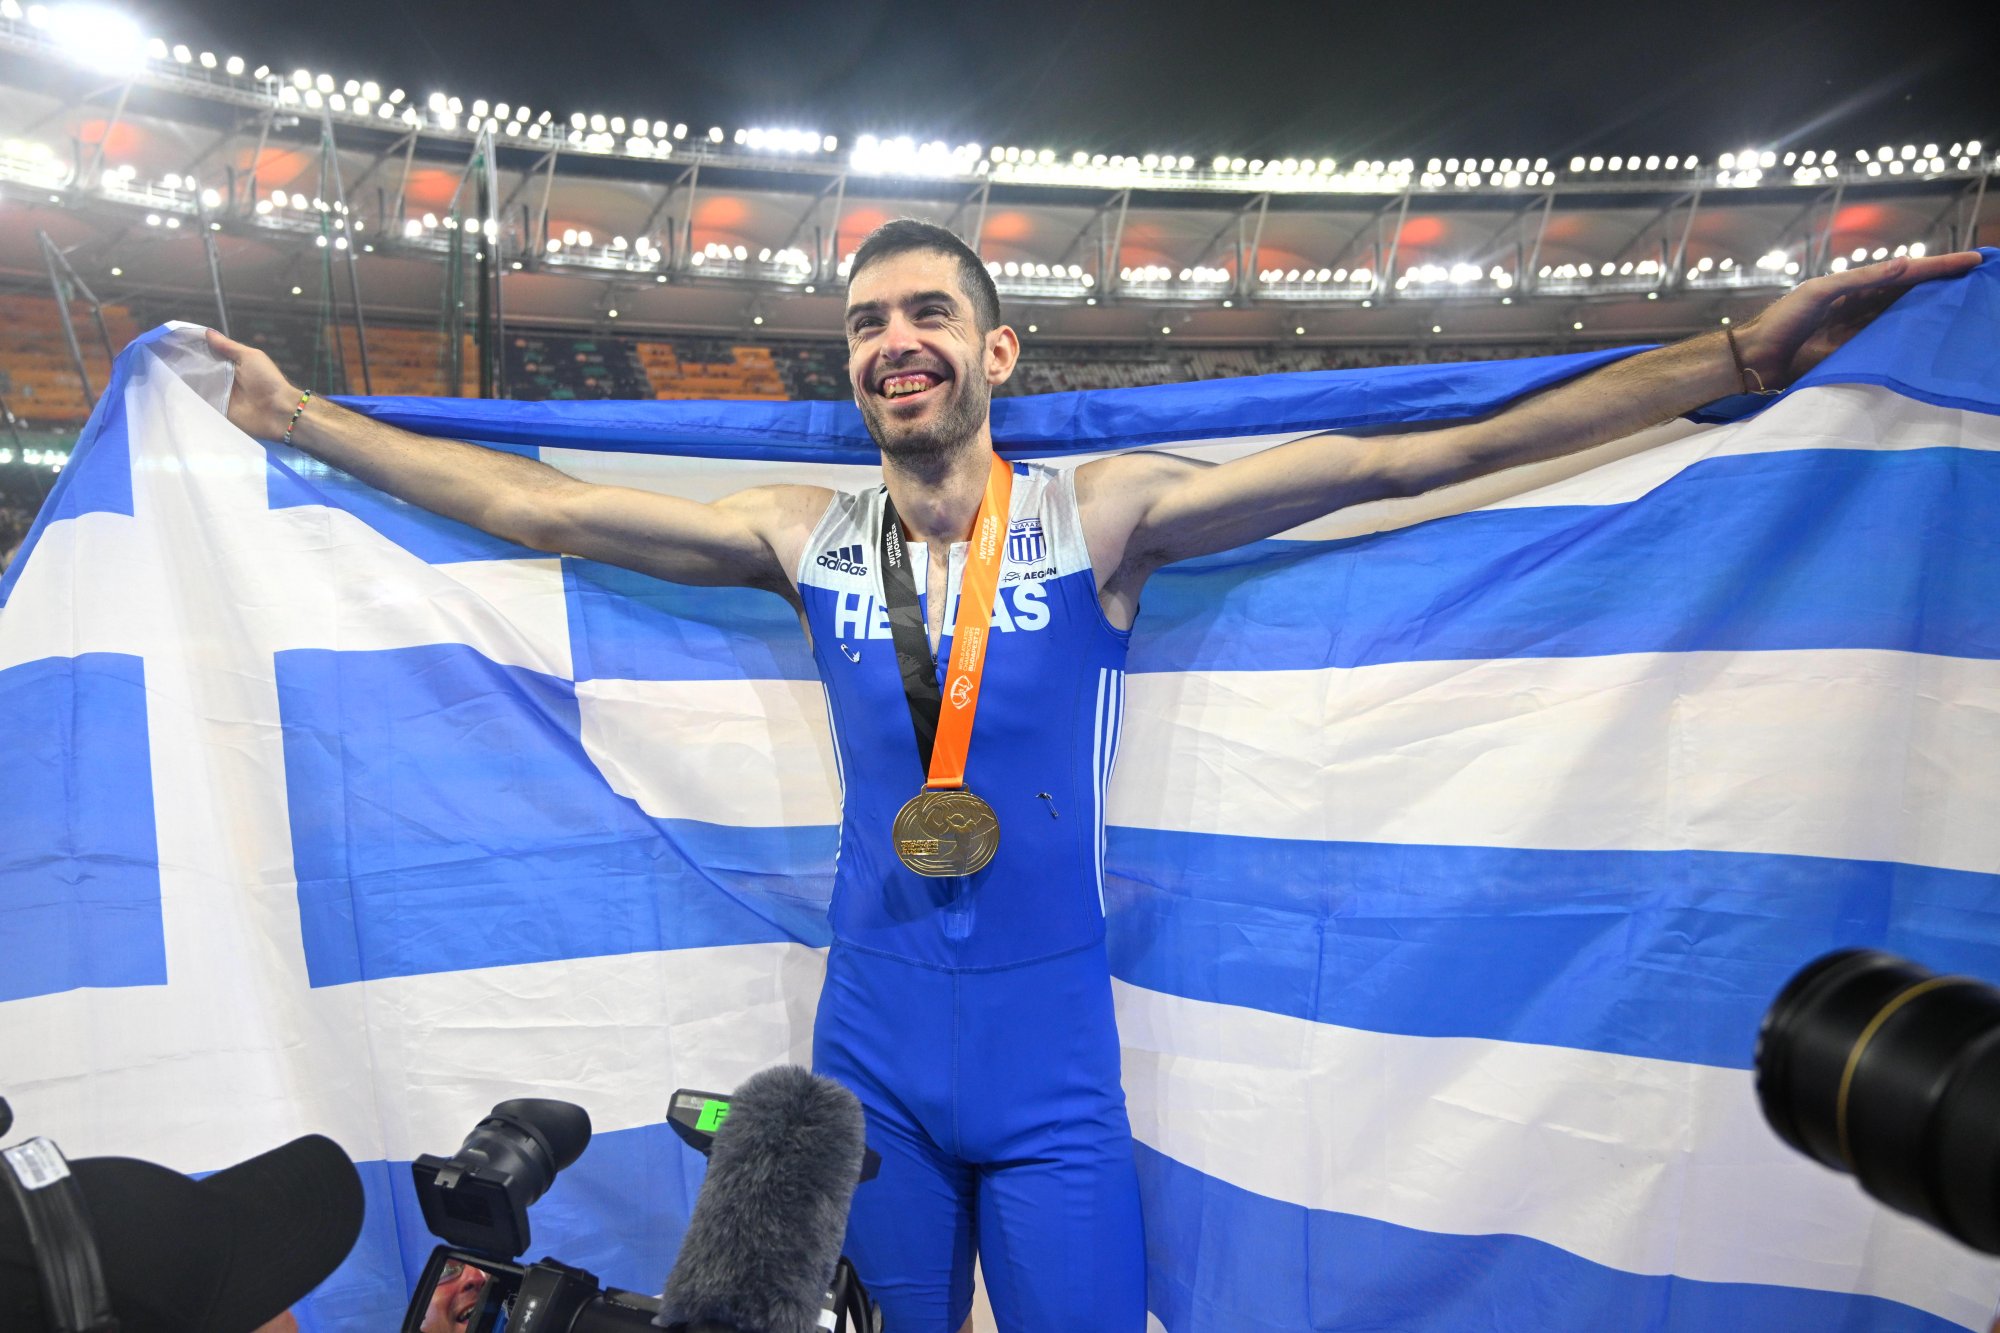 Νέος θρίαμβος για τον Μίλτο Τεντόγλου - Πήρε το χρυσό μετάλλιο και στο Παγκόσμιο πρωτάθλημα με 8,52 μ.